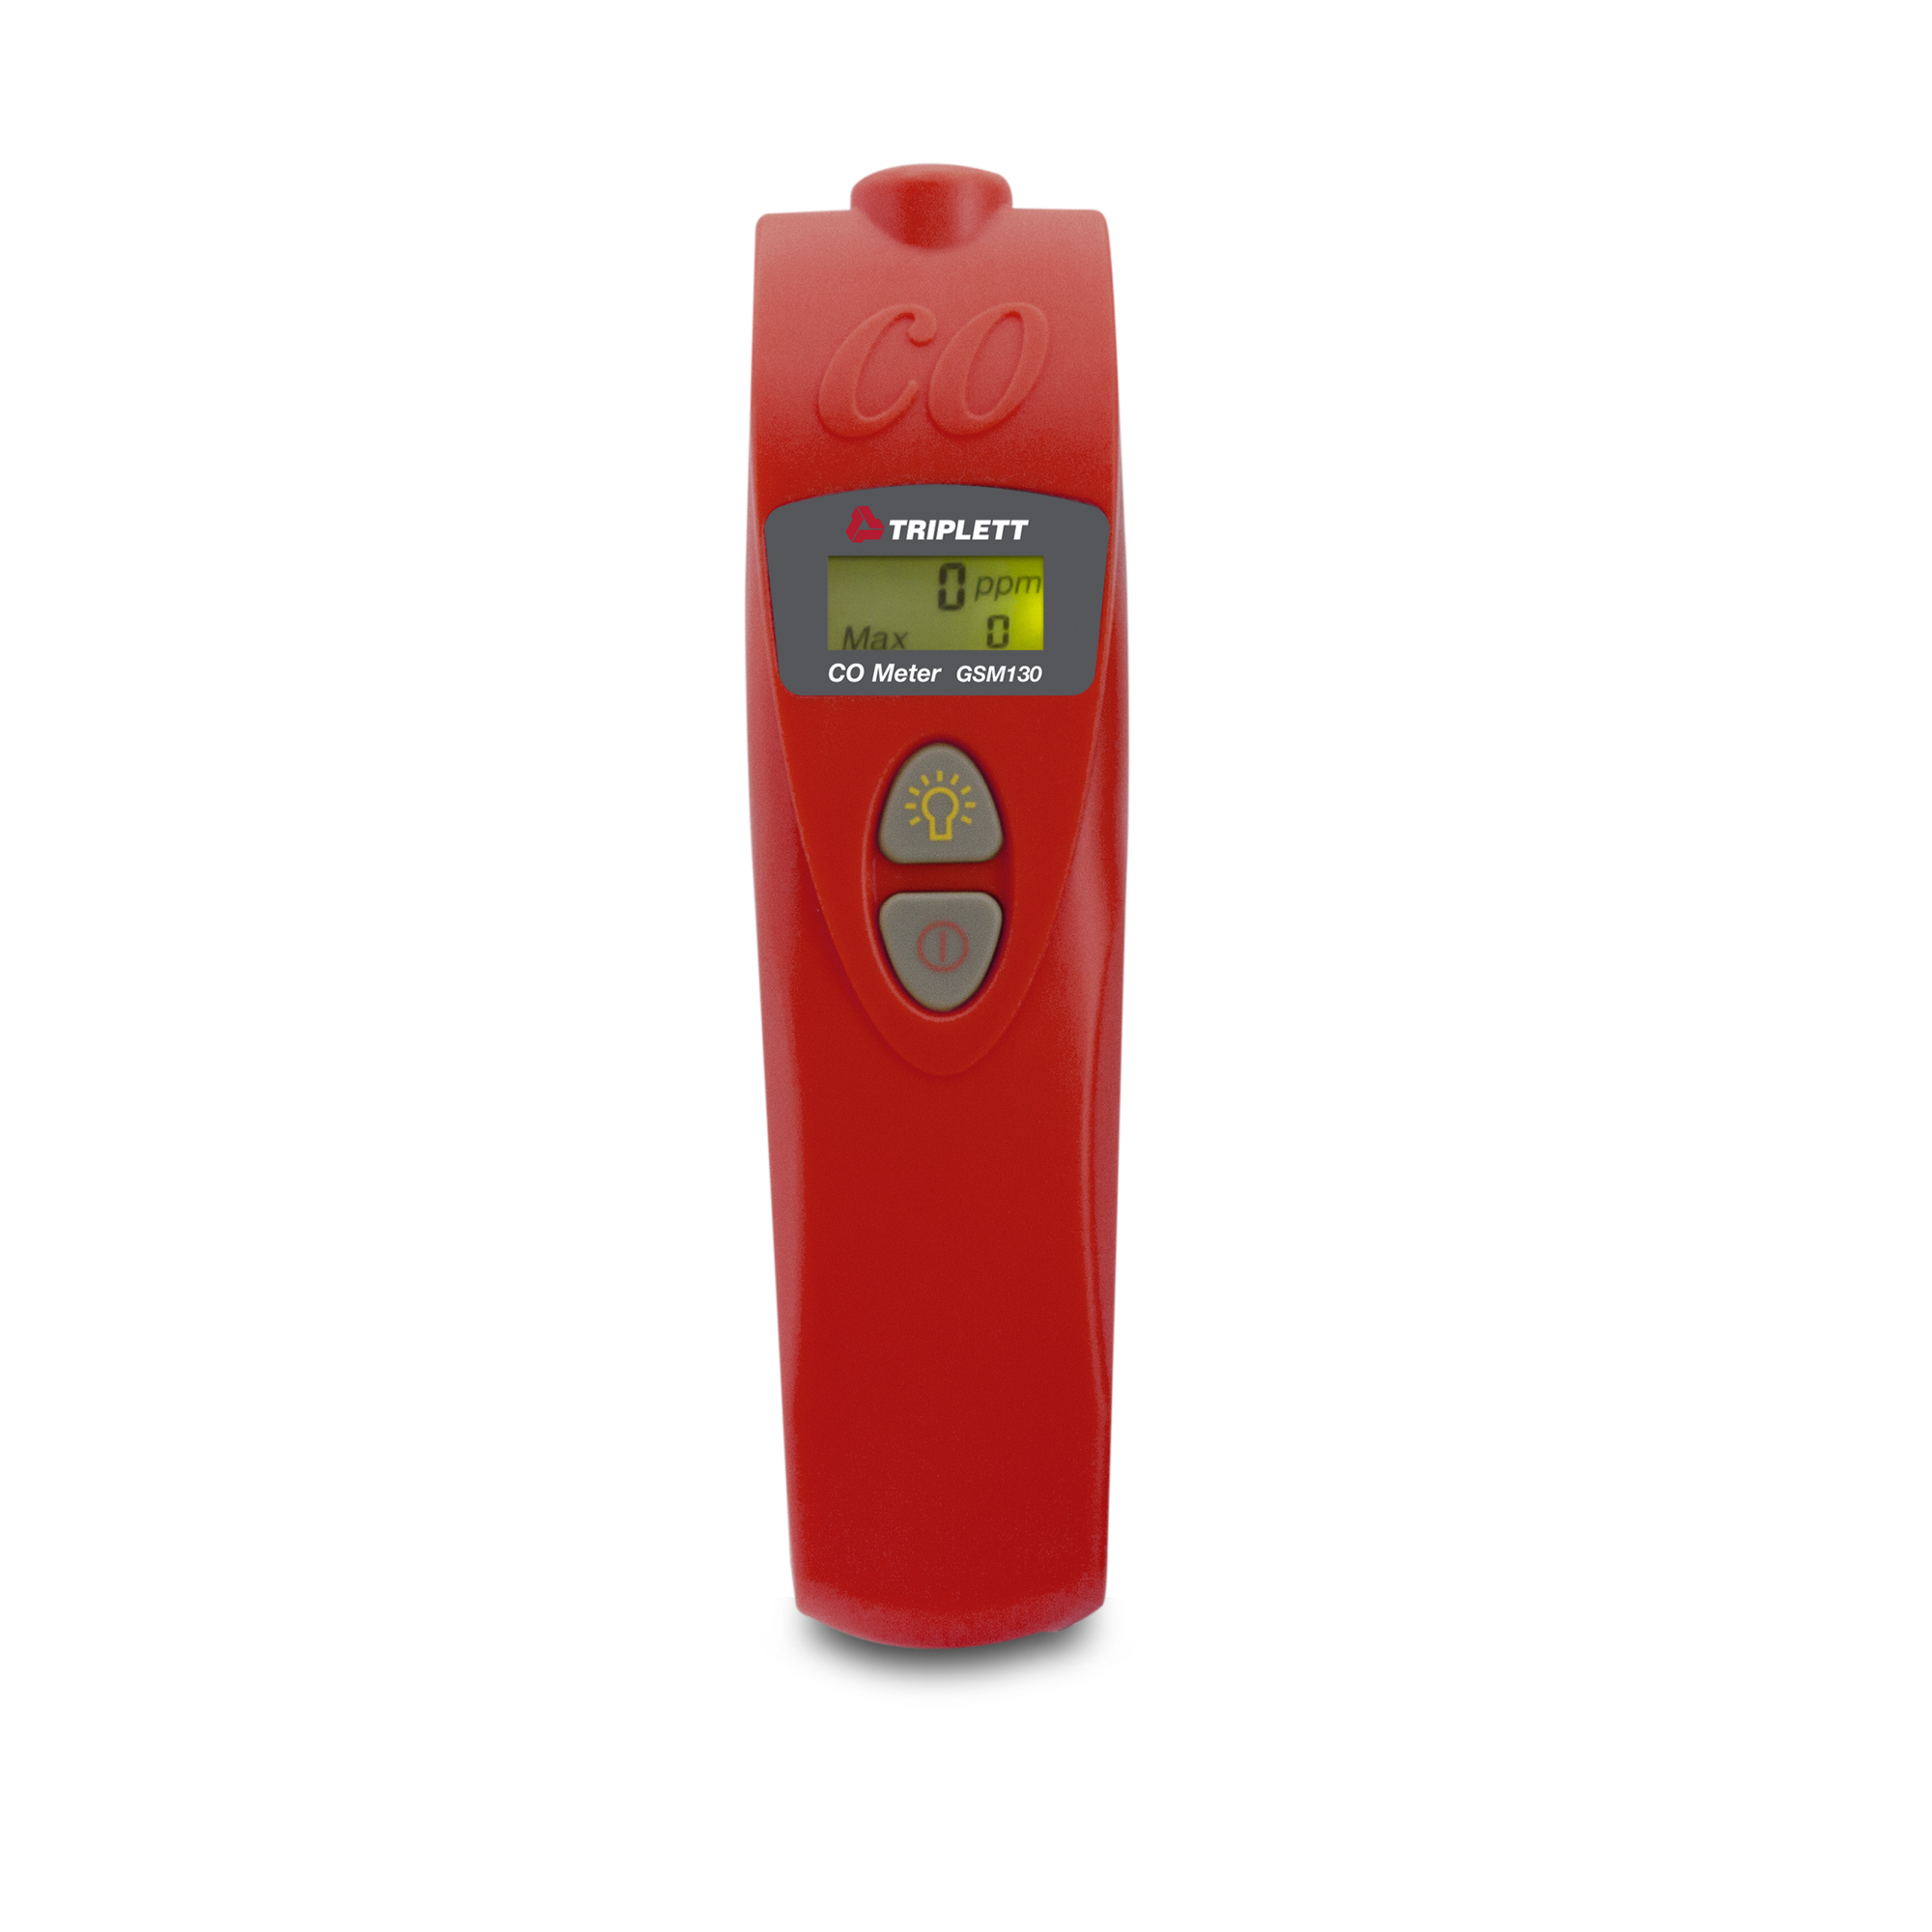 Triplett, Portable Carbon Monoxide (CO) Meter, Model GSM130